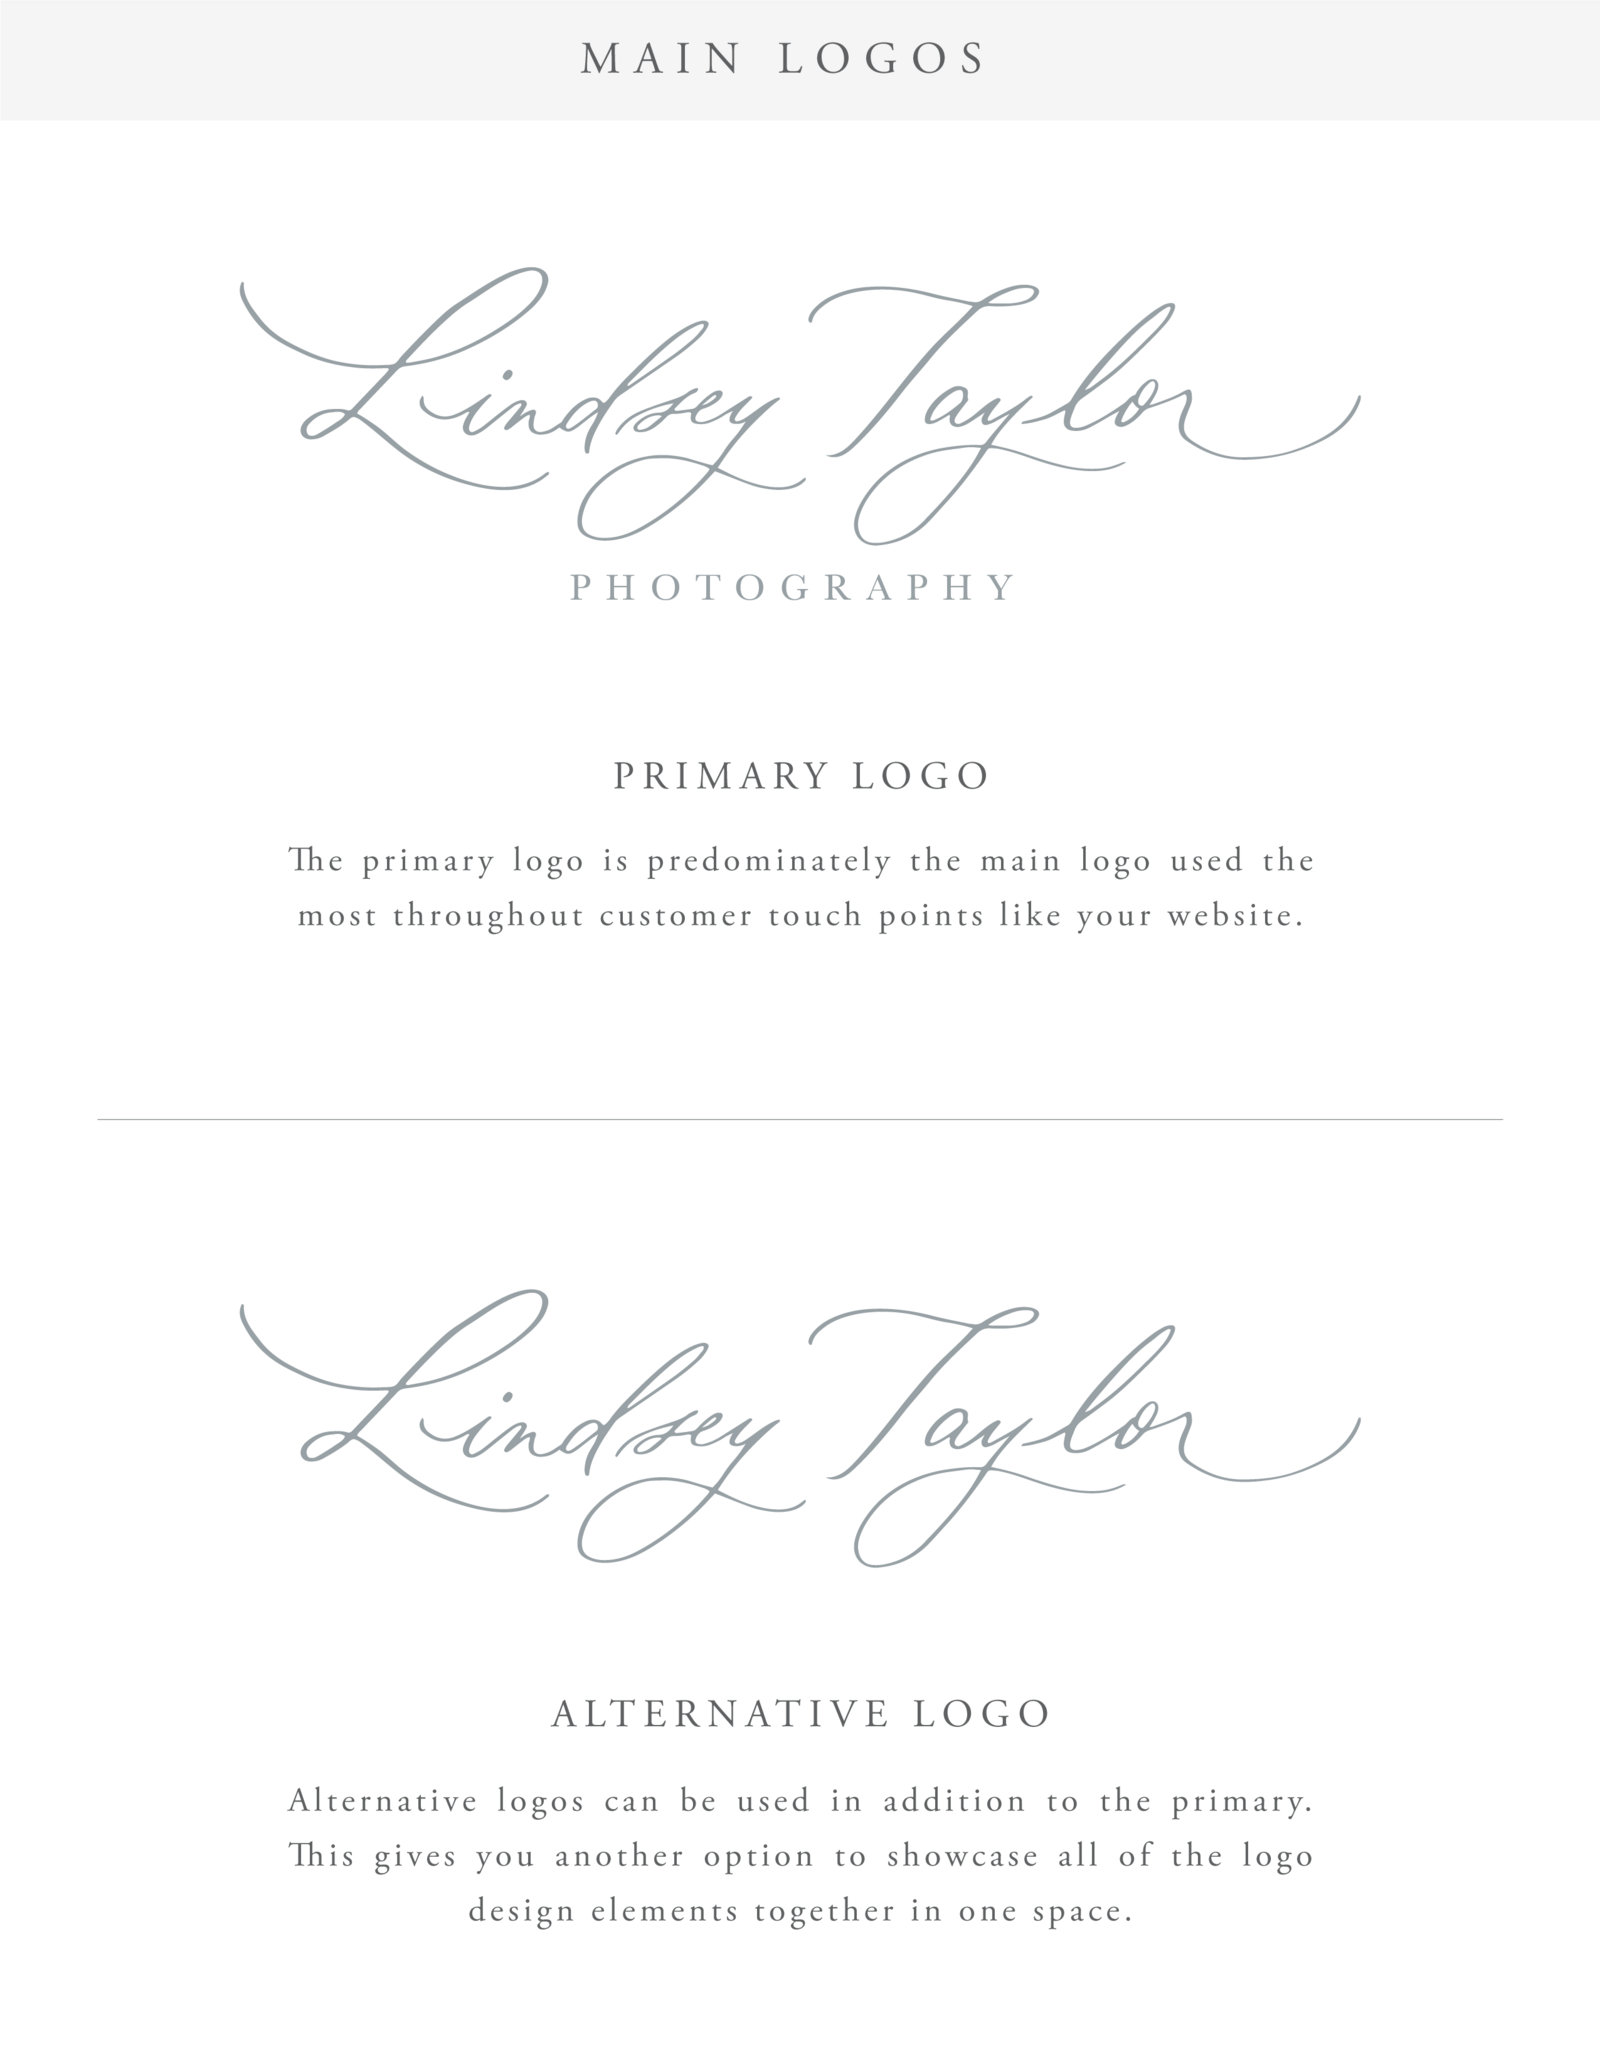 Lindsey Taylor Design Board-03